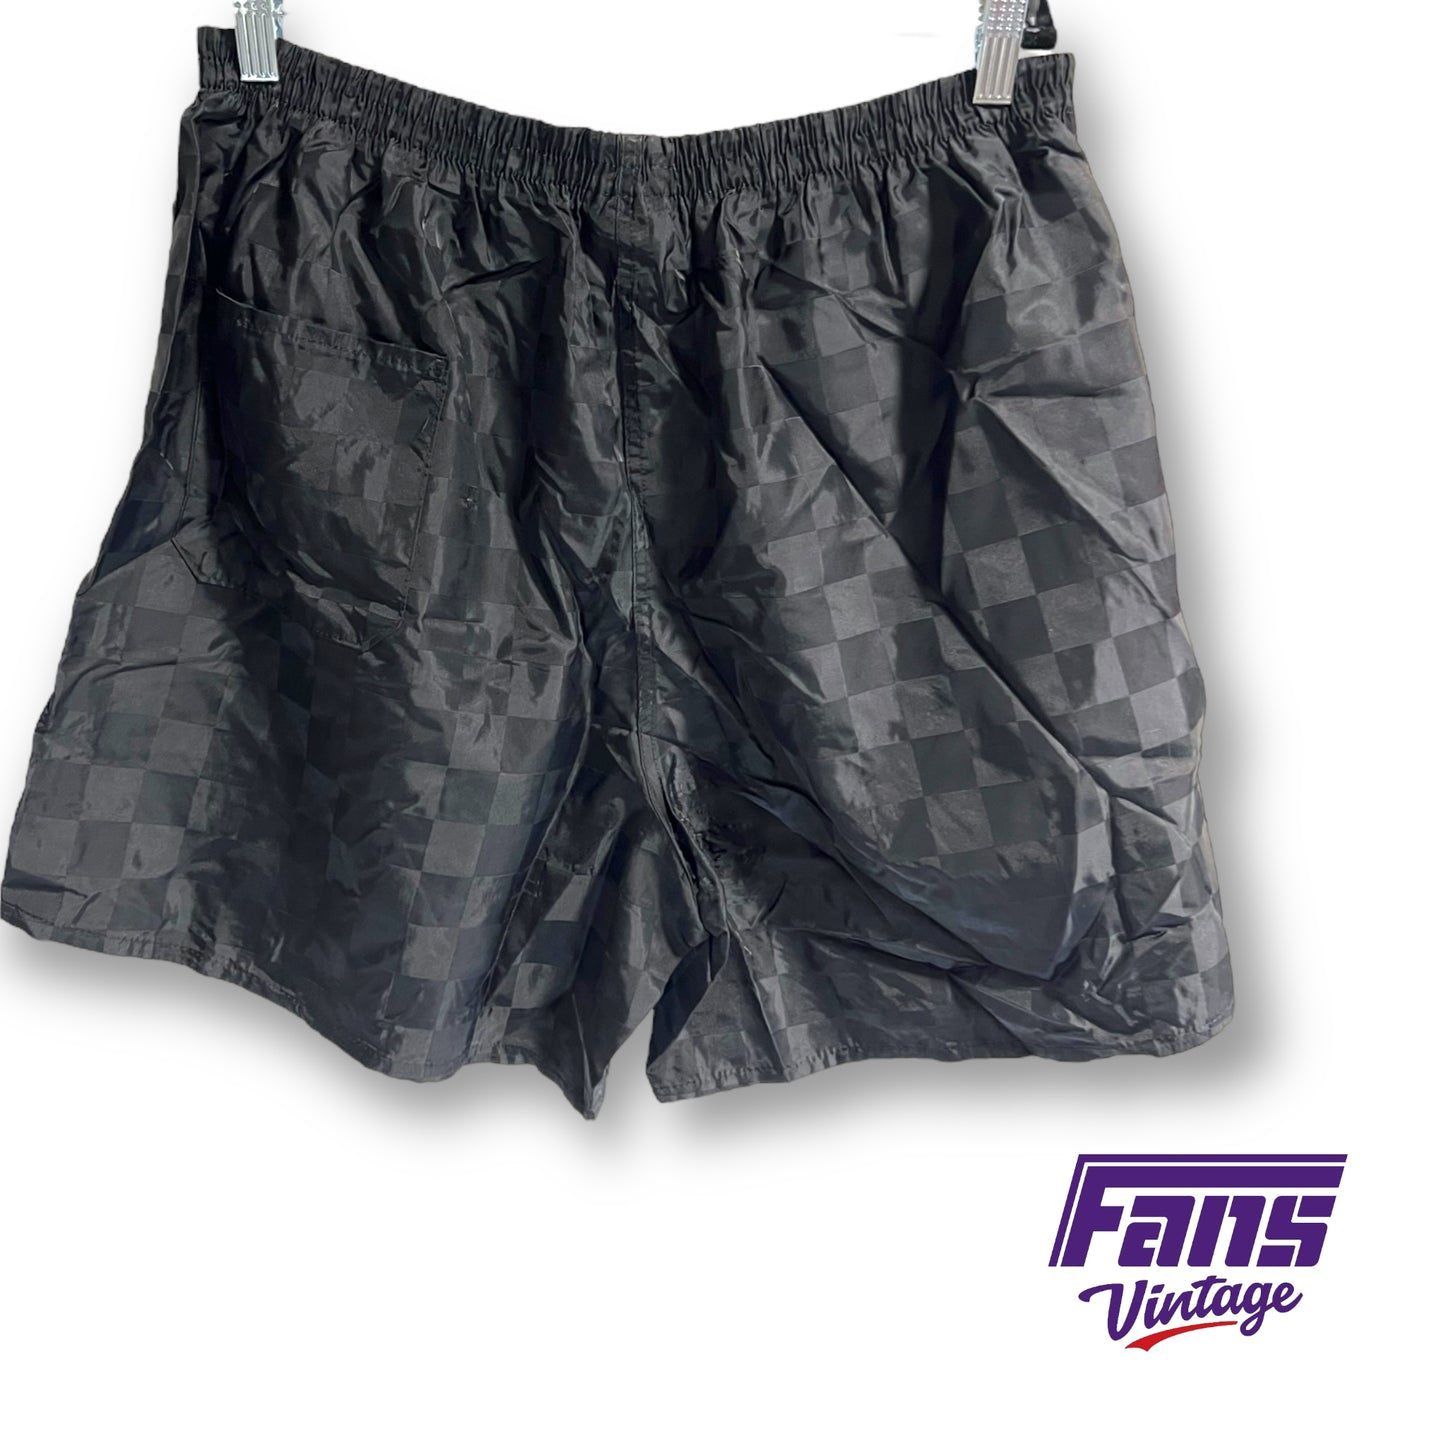 90s vintage Umbro soccer shorts